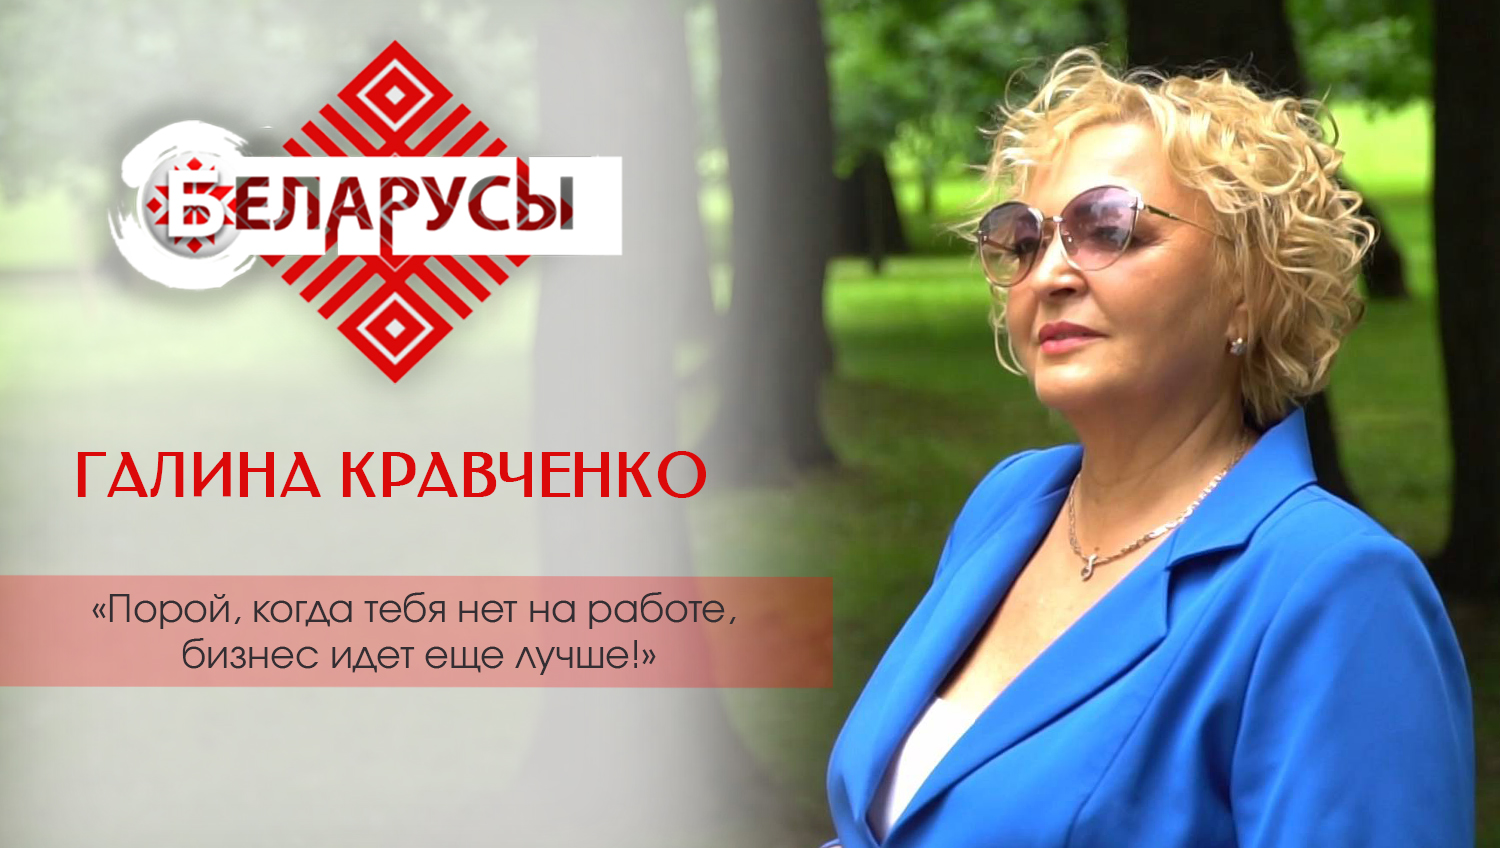 Моделинг после выхода на пенсию: белорусская бизнес-леди о карьере, саморазвитии и любви к себе 